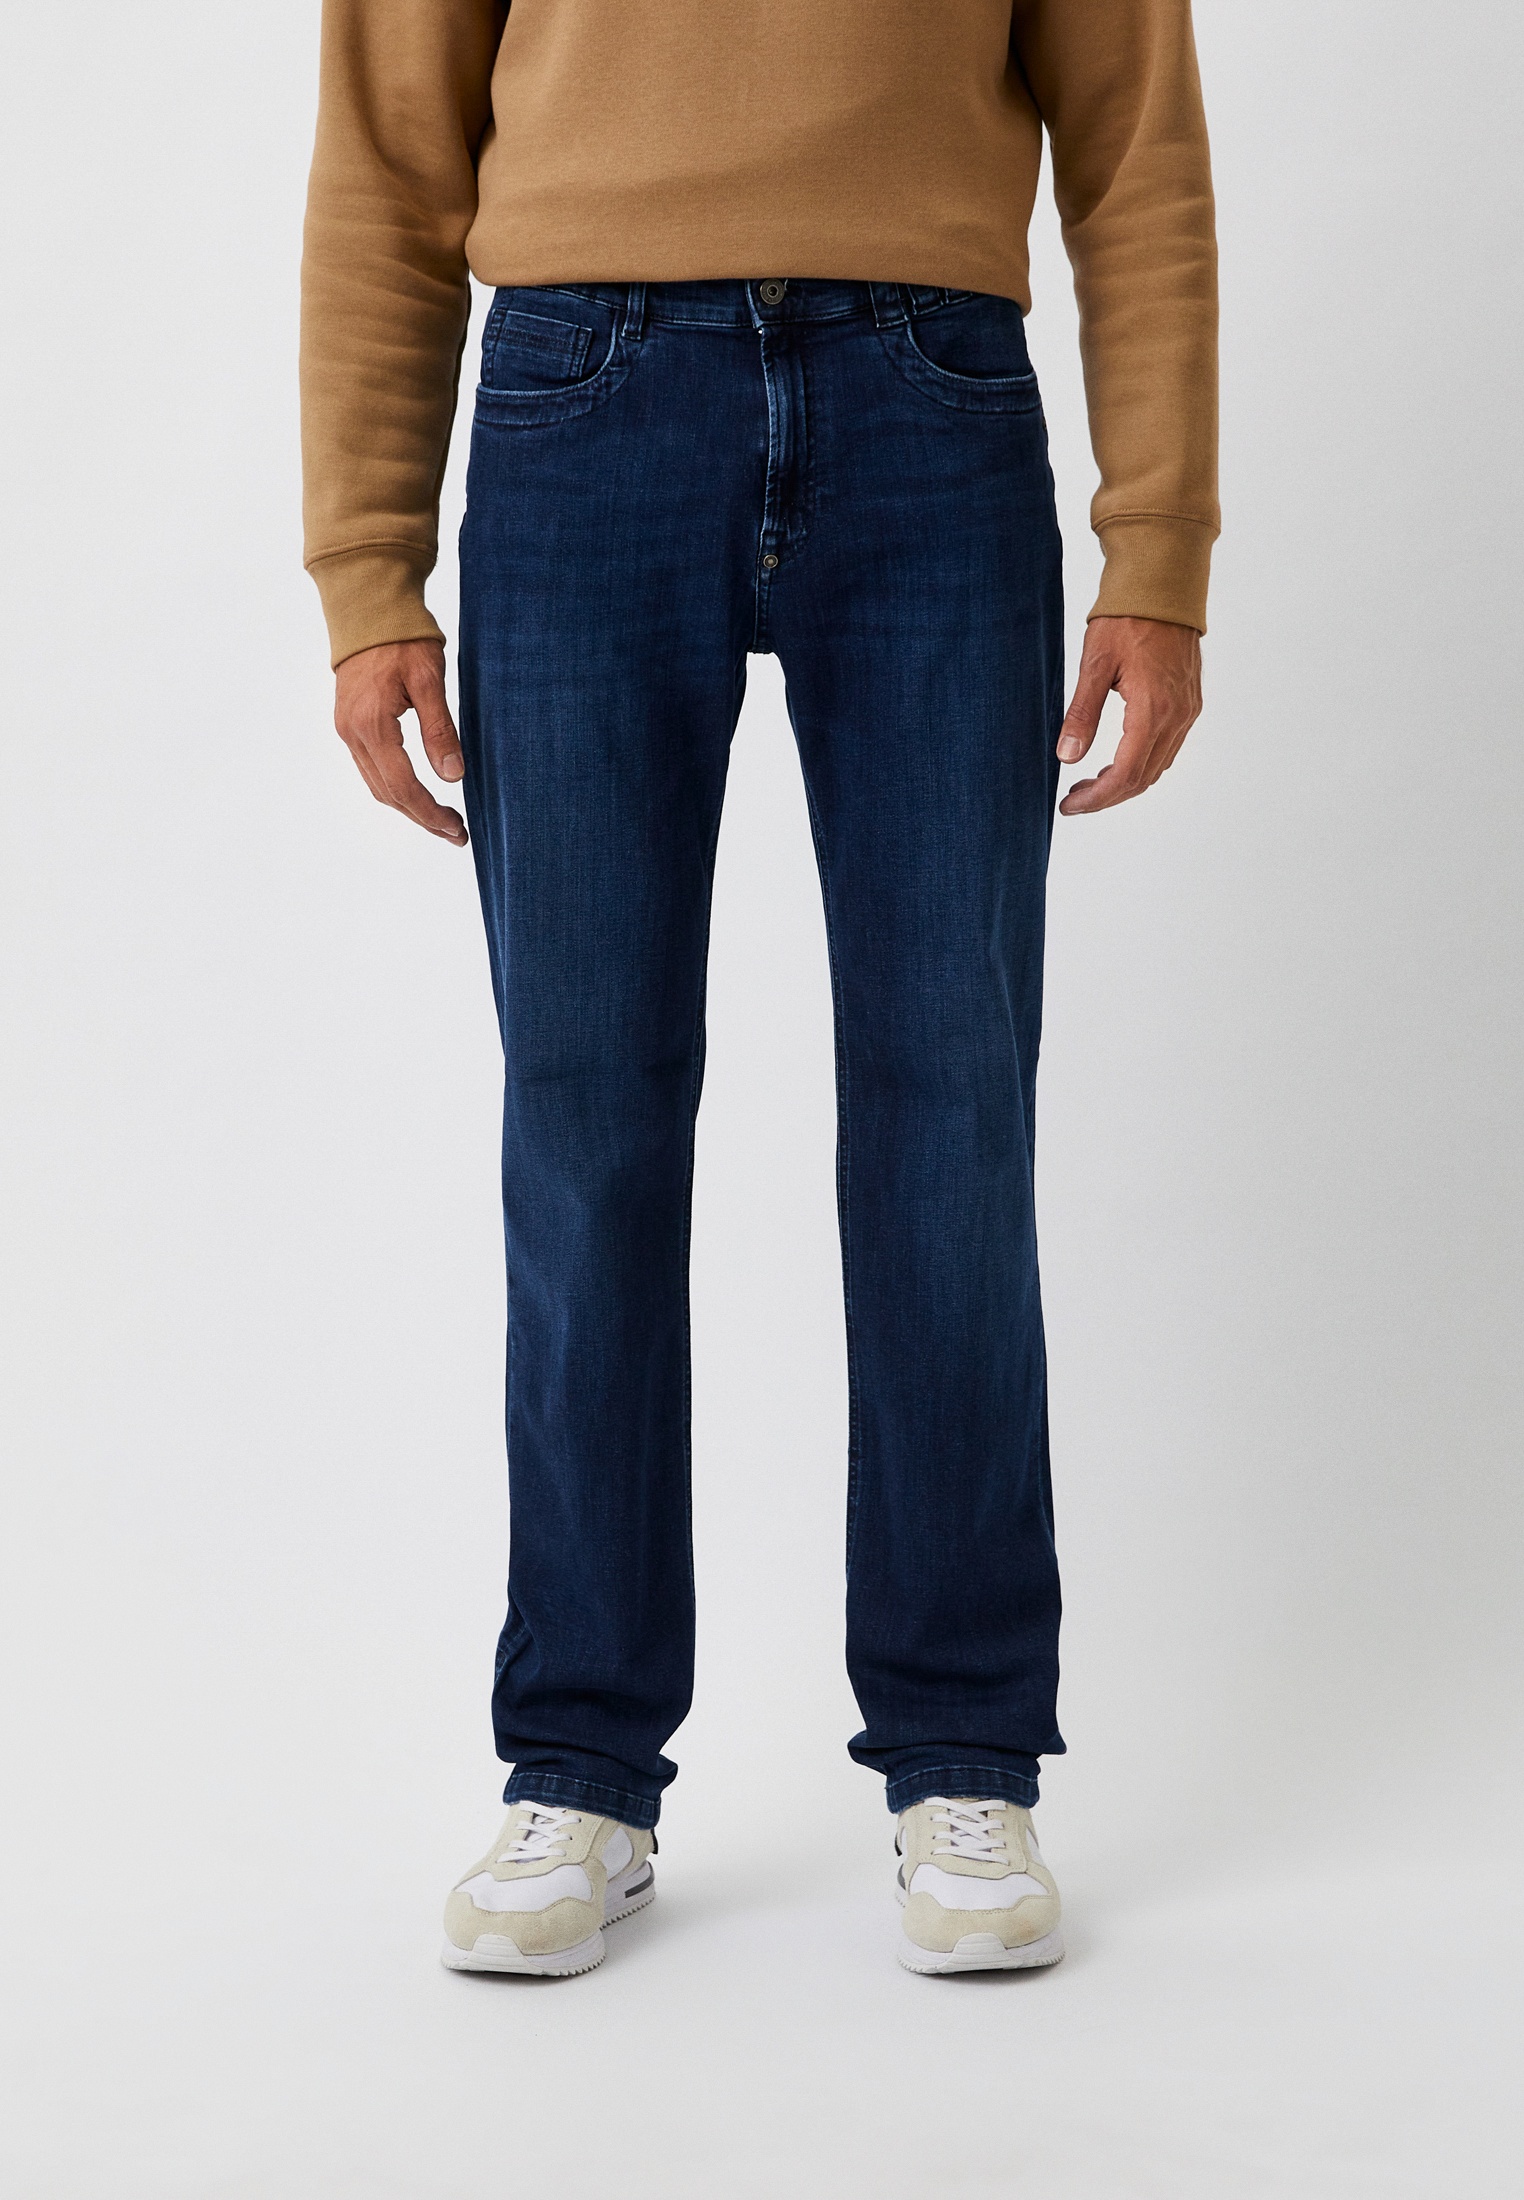 Мужские прямые джинсы Bikkembergs (Биккембергс) C Q 113 01 S 3511: изображение 5